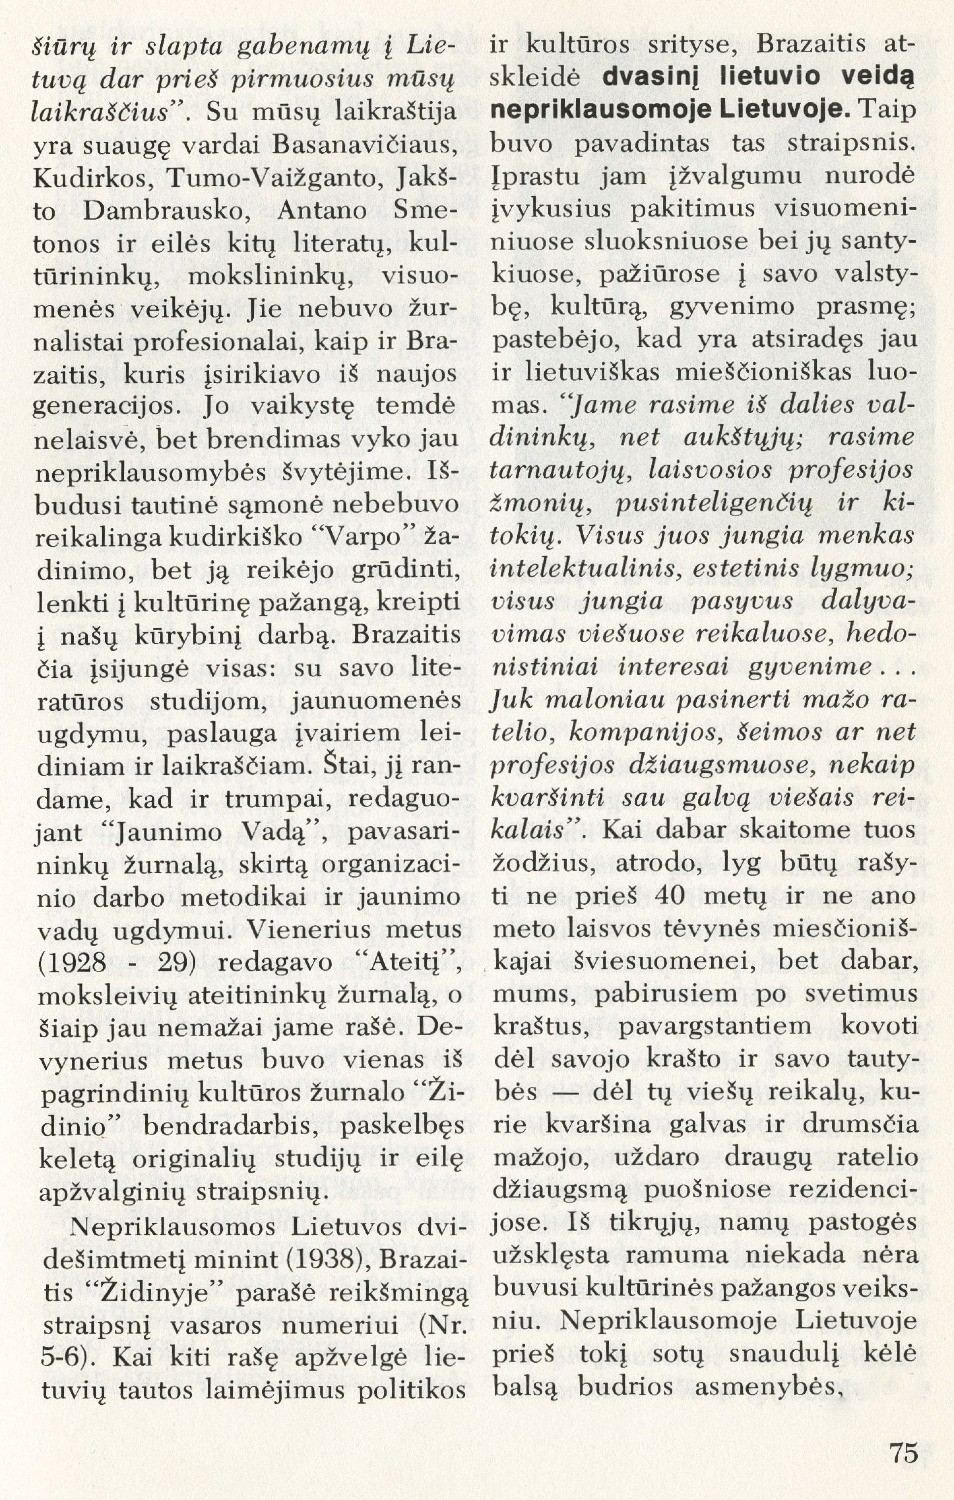 Brazaitis kaip literatūros mokslininkas / Dr. Juozas Girnius // Į laisvę. – 1995, Nr. 120, p. 32–37.